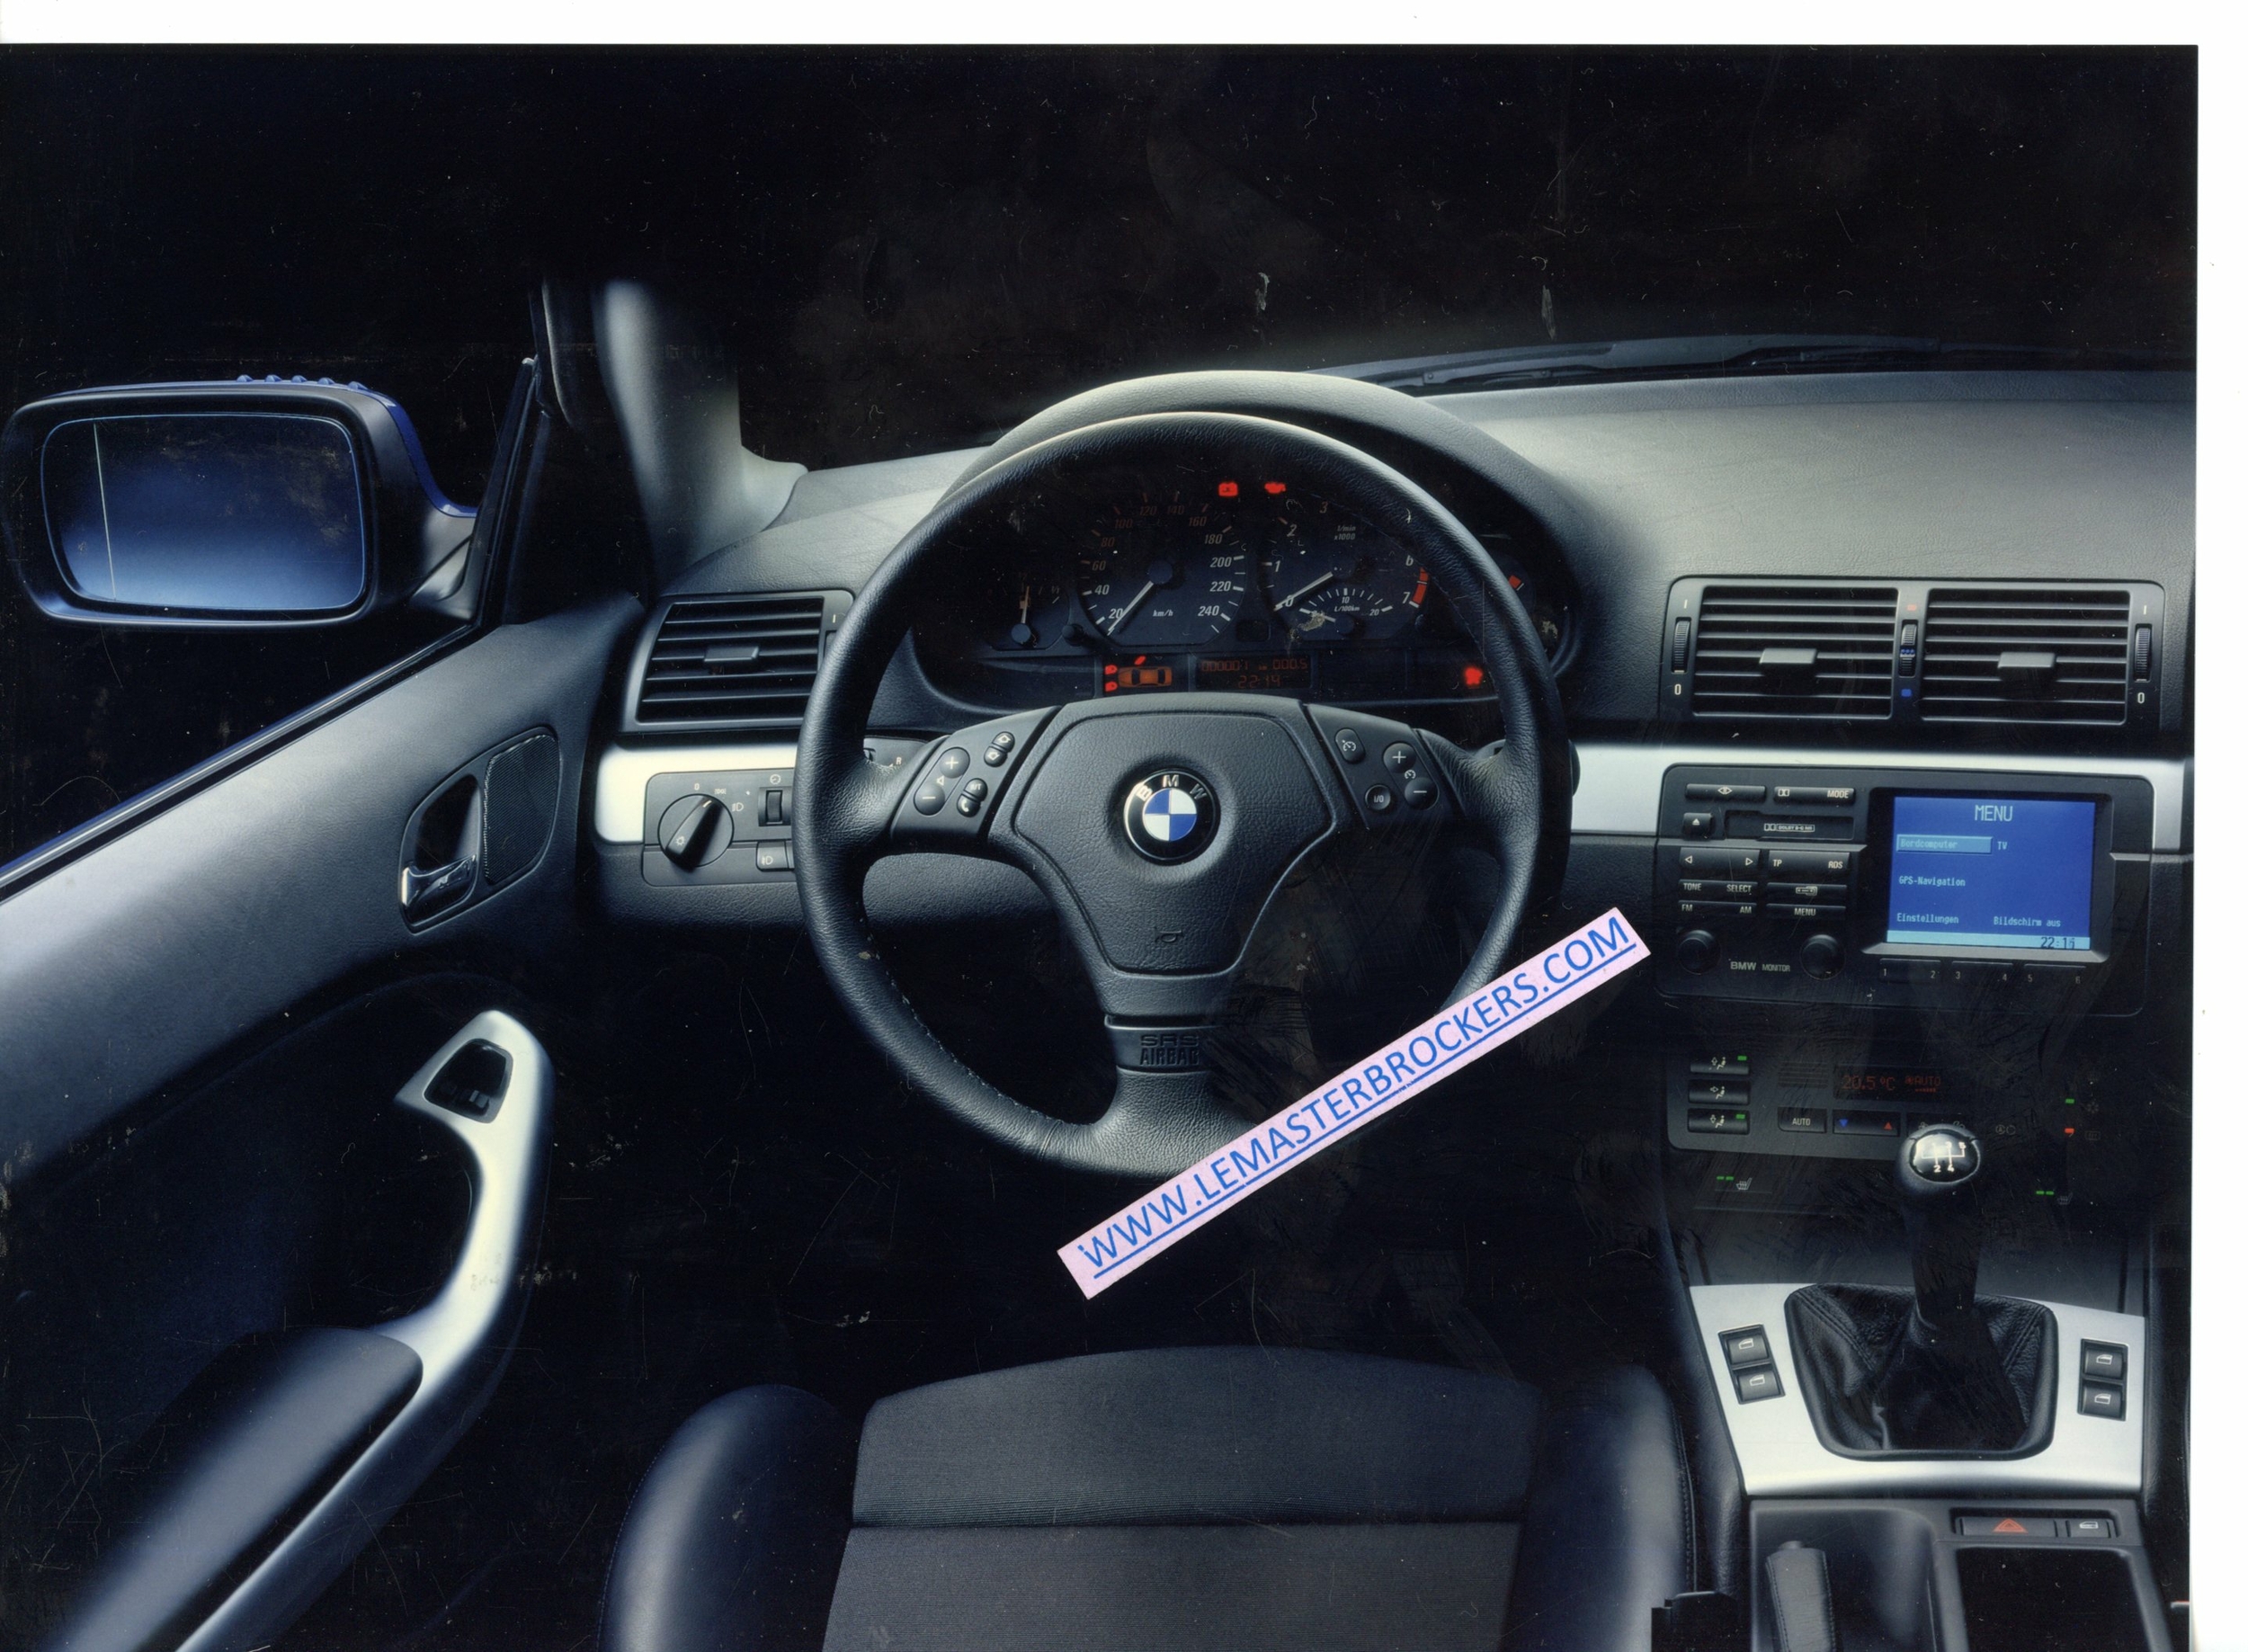 PHOTO BMW SERIE 3 COUPE INTERIEUR TABLEAU DE BORD - PHOTOGRAPHIE BMW AG RE 98.3.2215